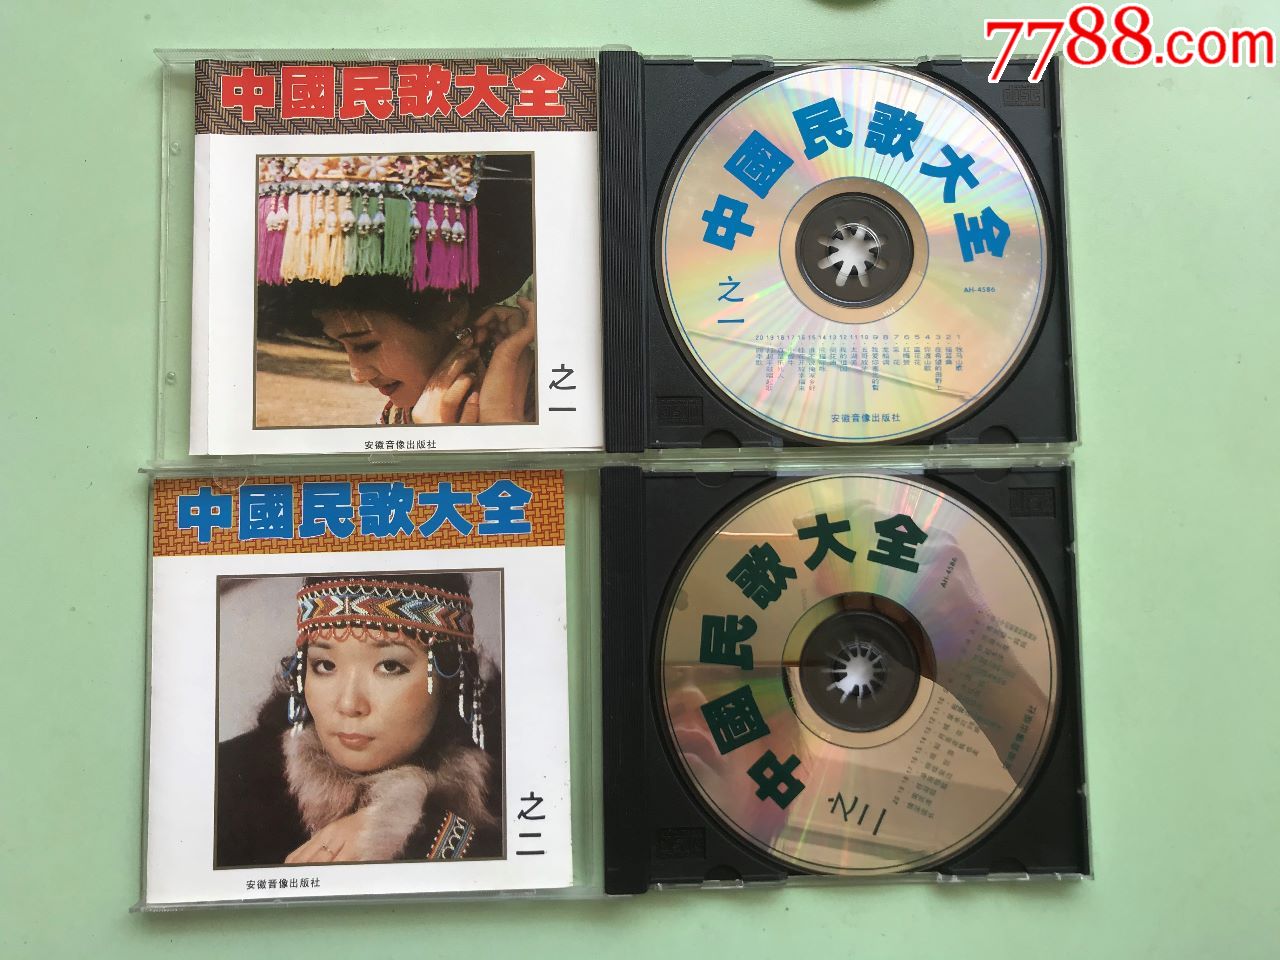 94年安徽音像首版,音乐cd,流行歌曲cd,标准型光盘,散曲合辑,九十年代